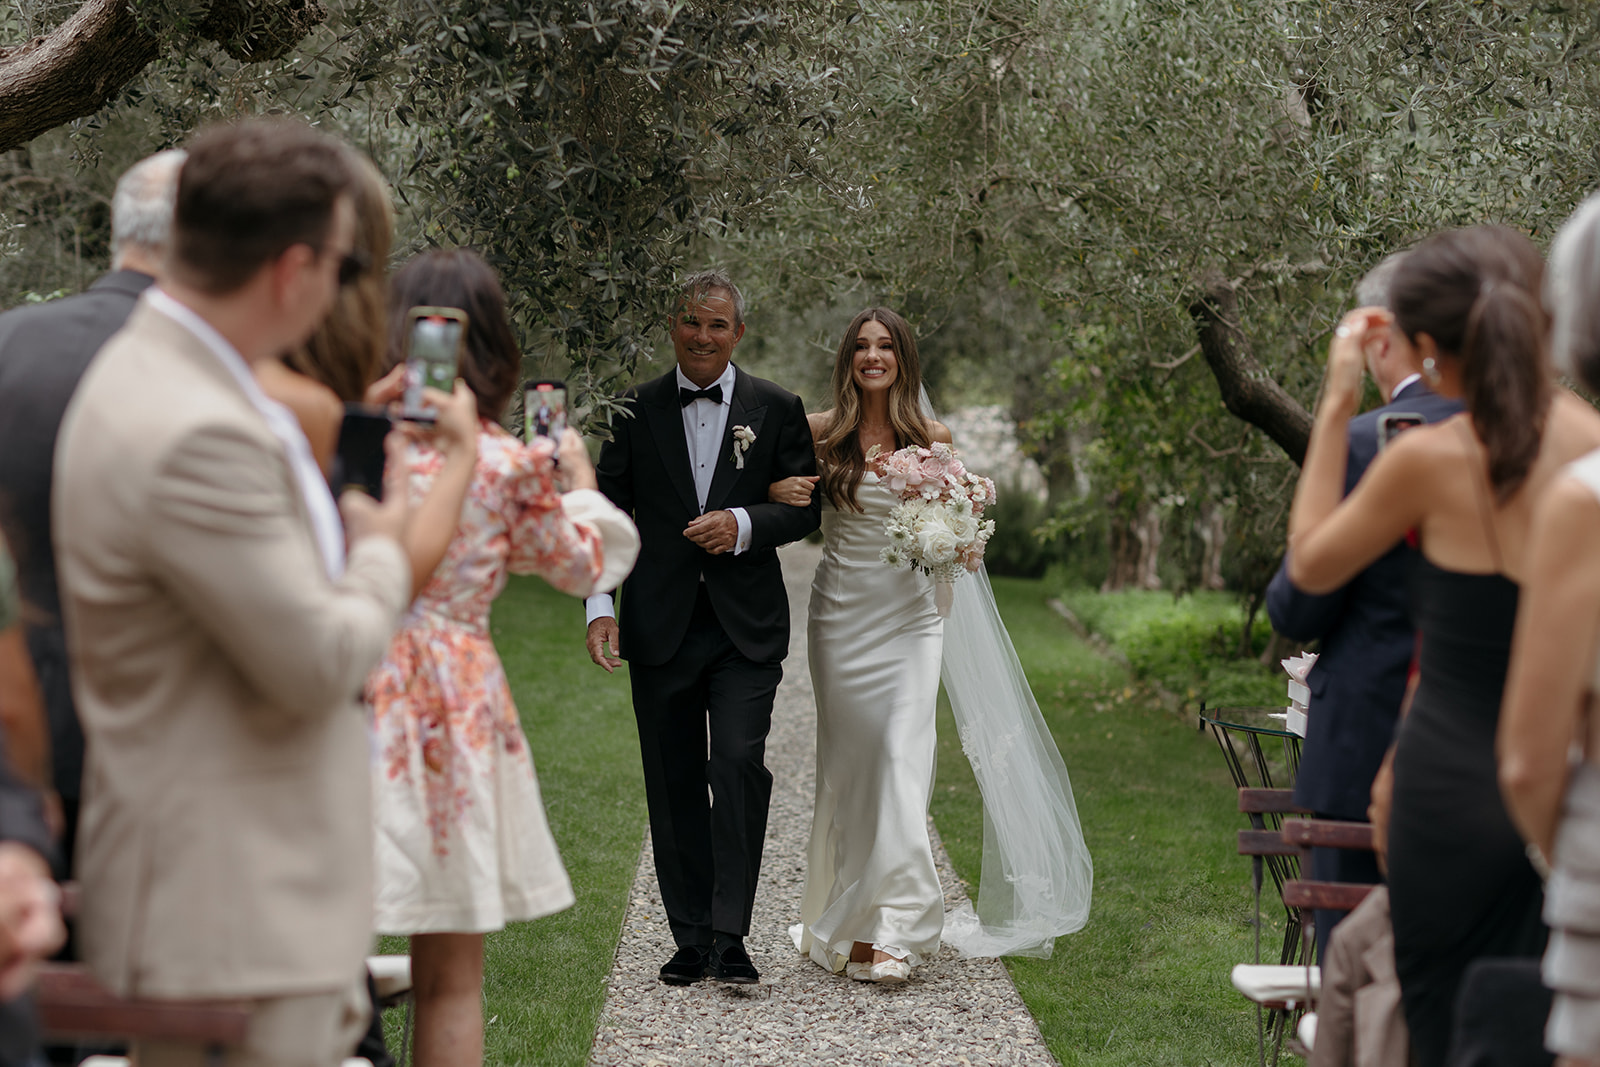 Castello Di Vicarello Wedding in Tuscany 
Tuscany wedding at Castello Di Vicarello